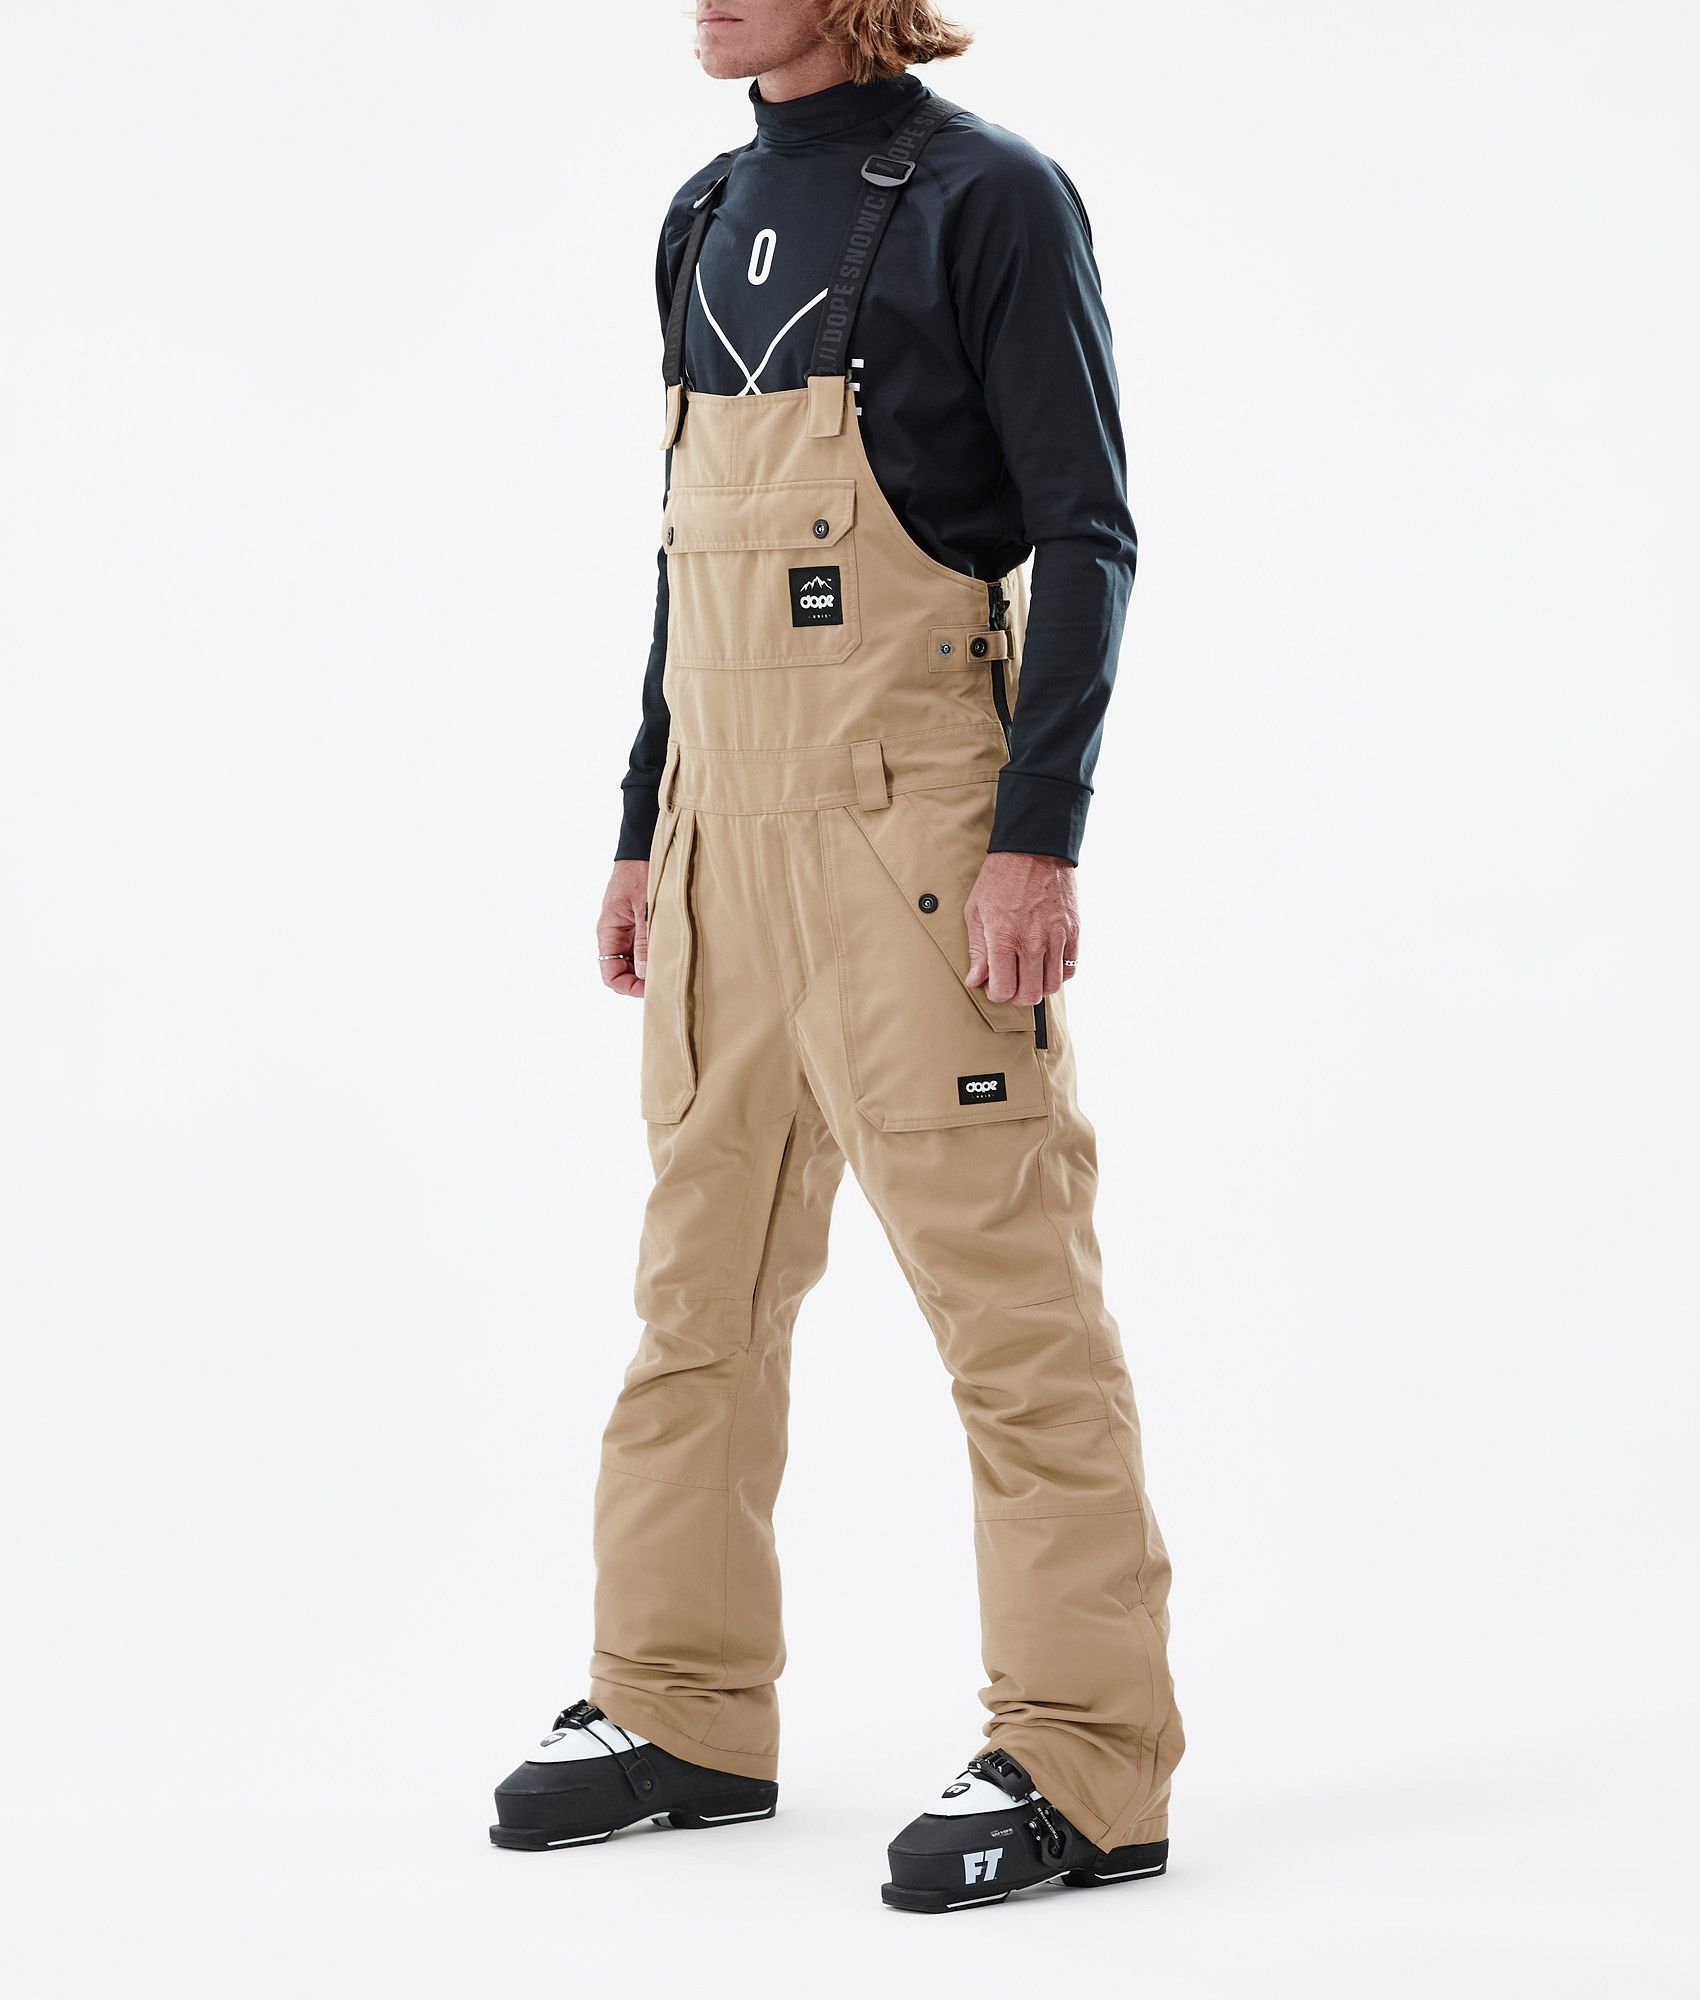 Marmot Refuge mens ski pants size medium - sporting goods - by owner - sale  - craigslist